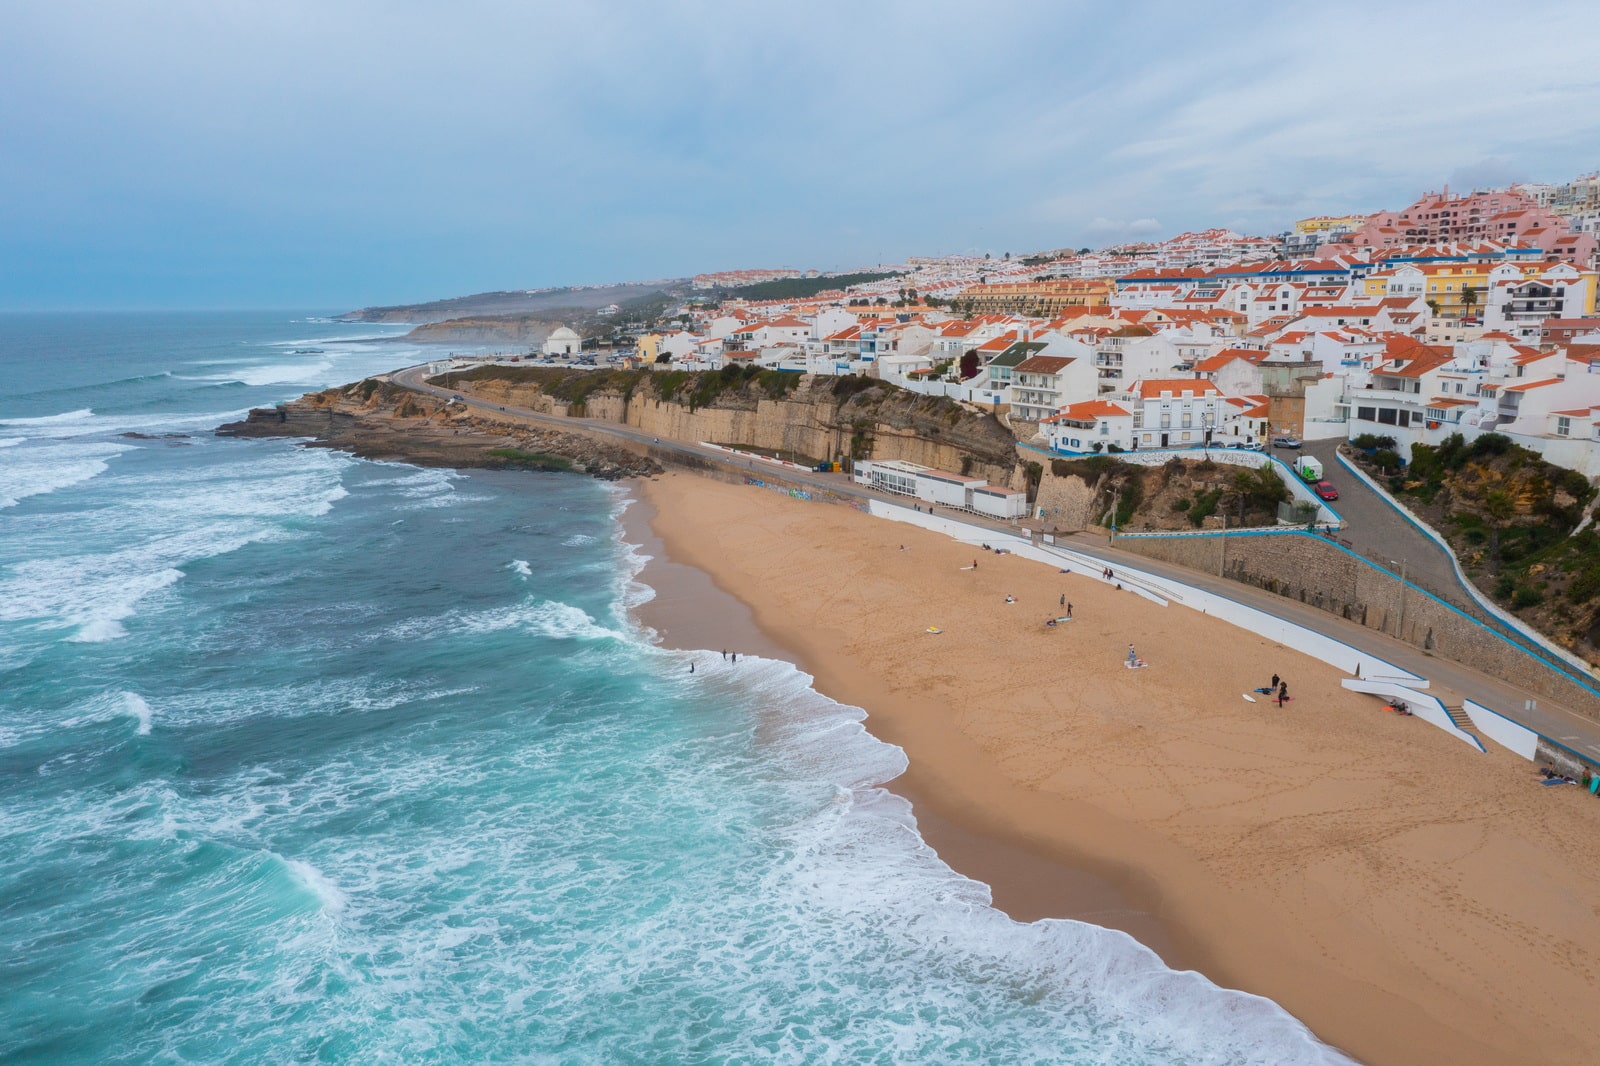 Praia del norte coast and white houses in Portugal